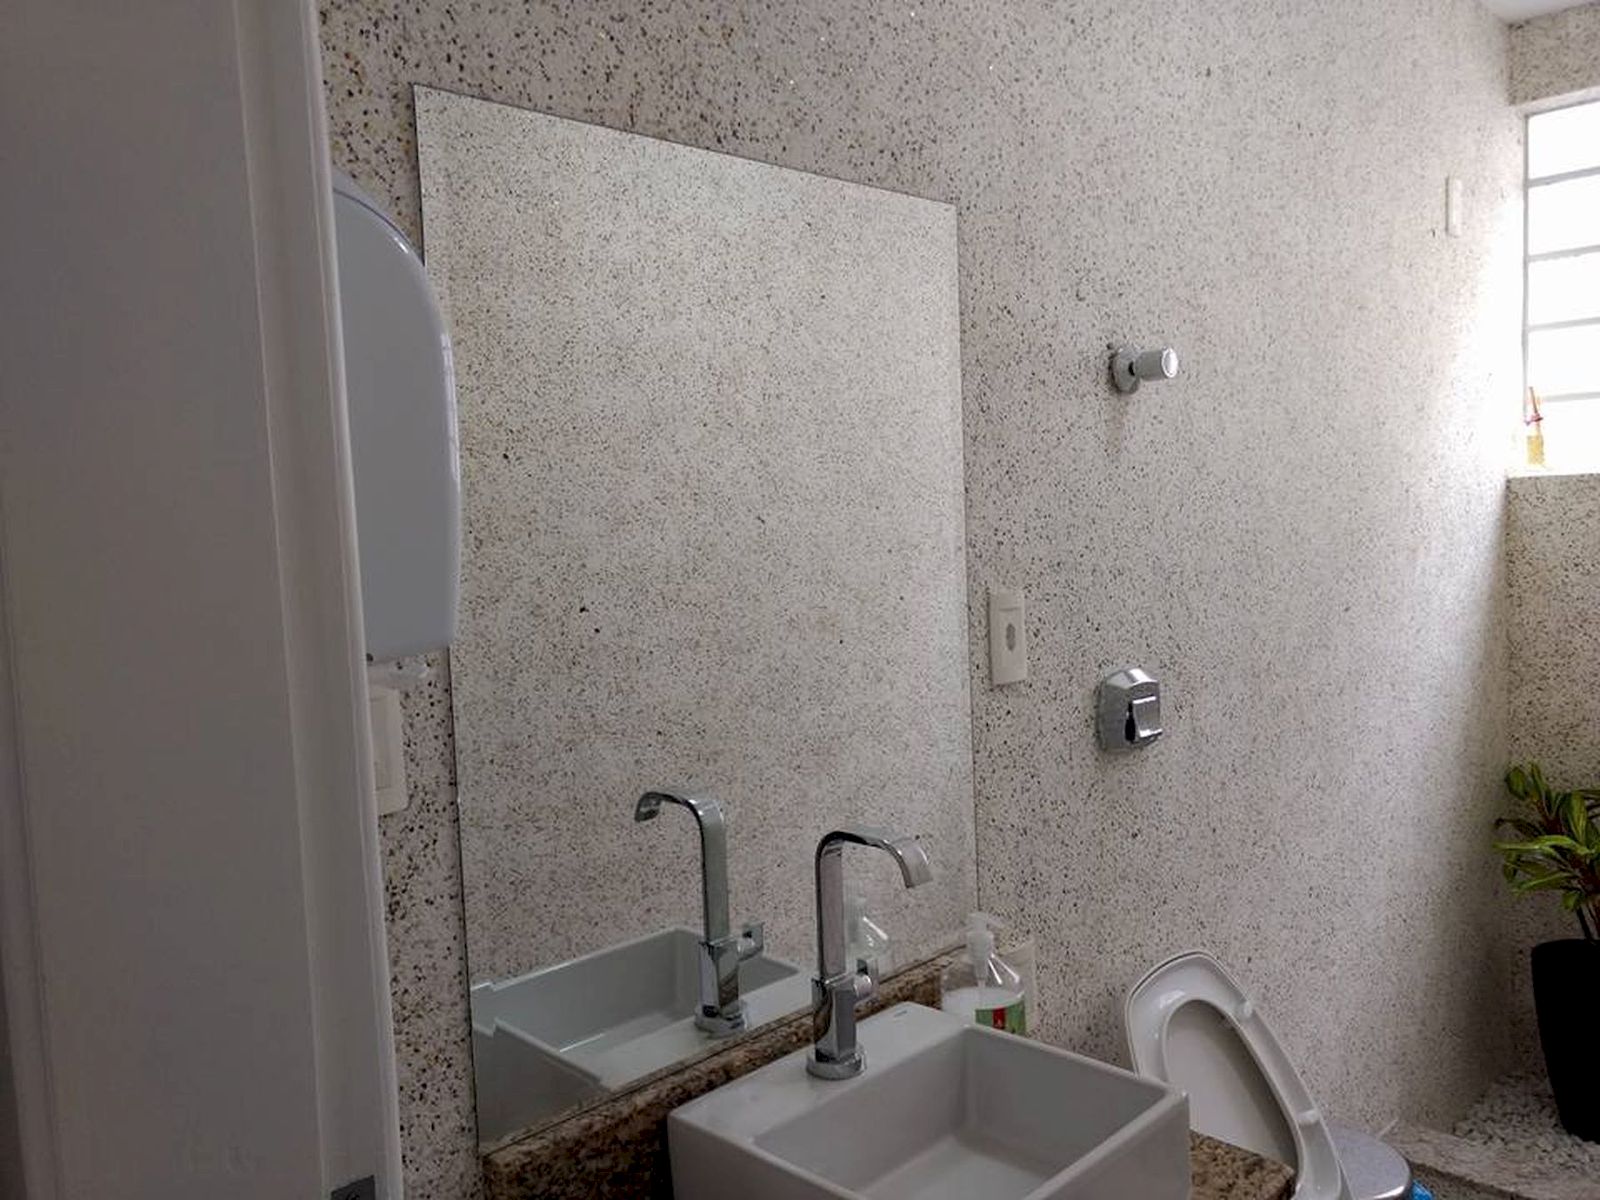 Жидкие обои для ванной комнаты - пошаговая инструкция по нанесению, для стен в ванной комнате.